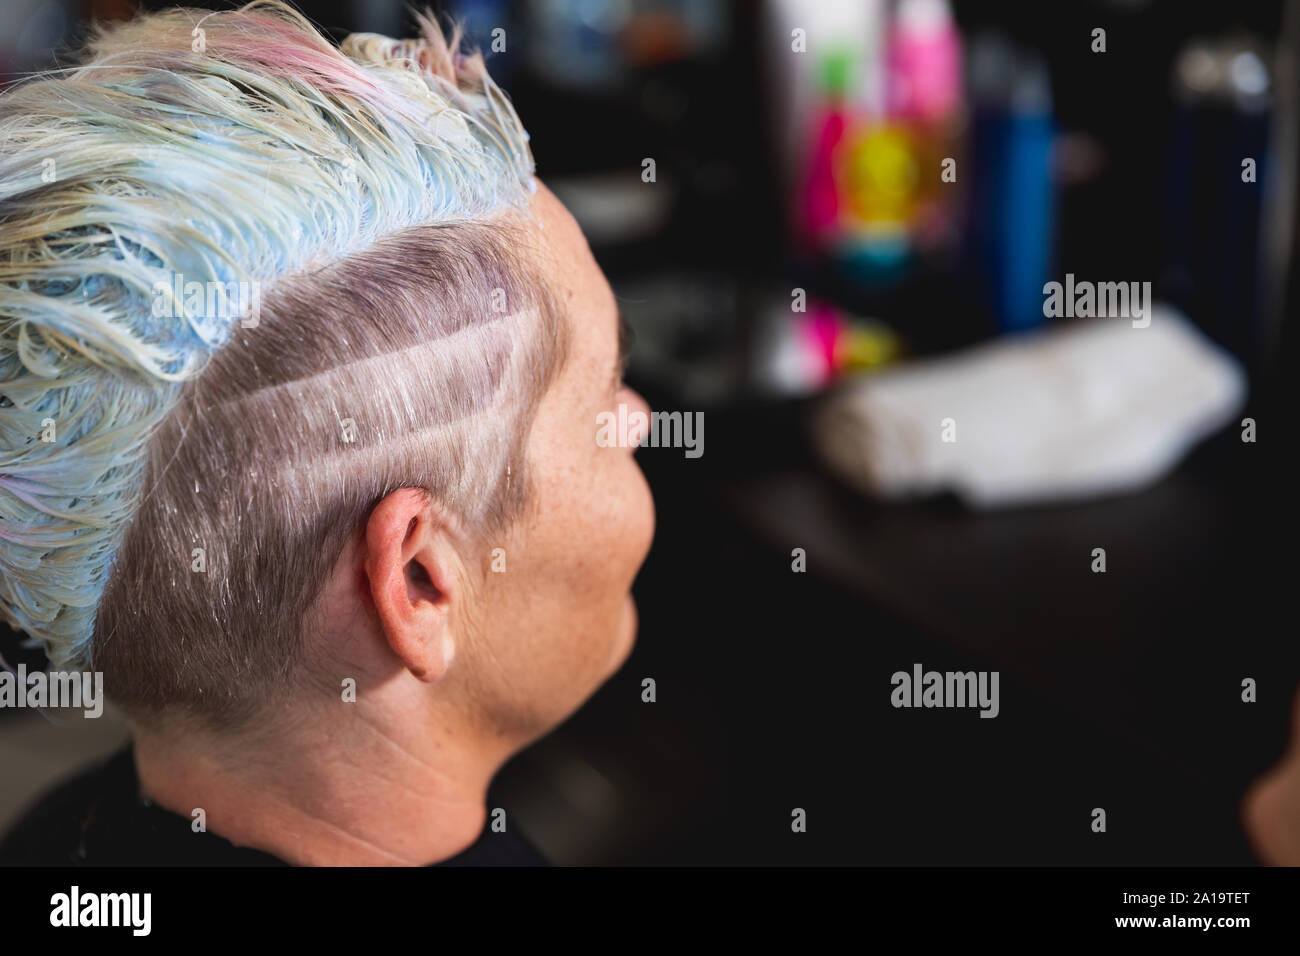 Cliente ayant ses cheveux avec son style de coiffure Banque D'Images